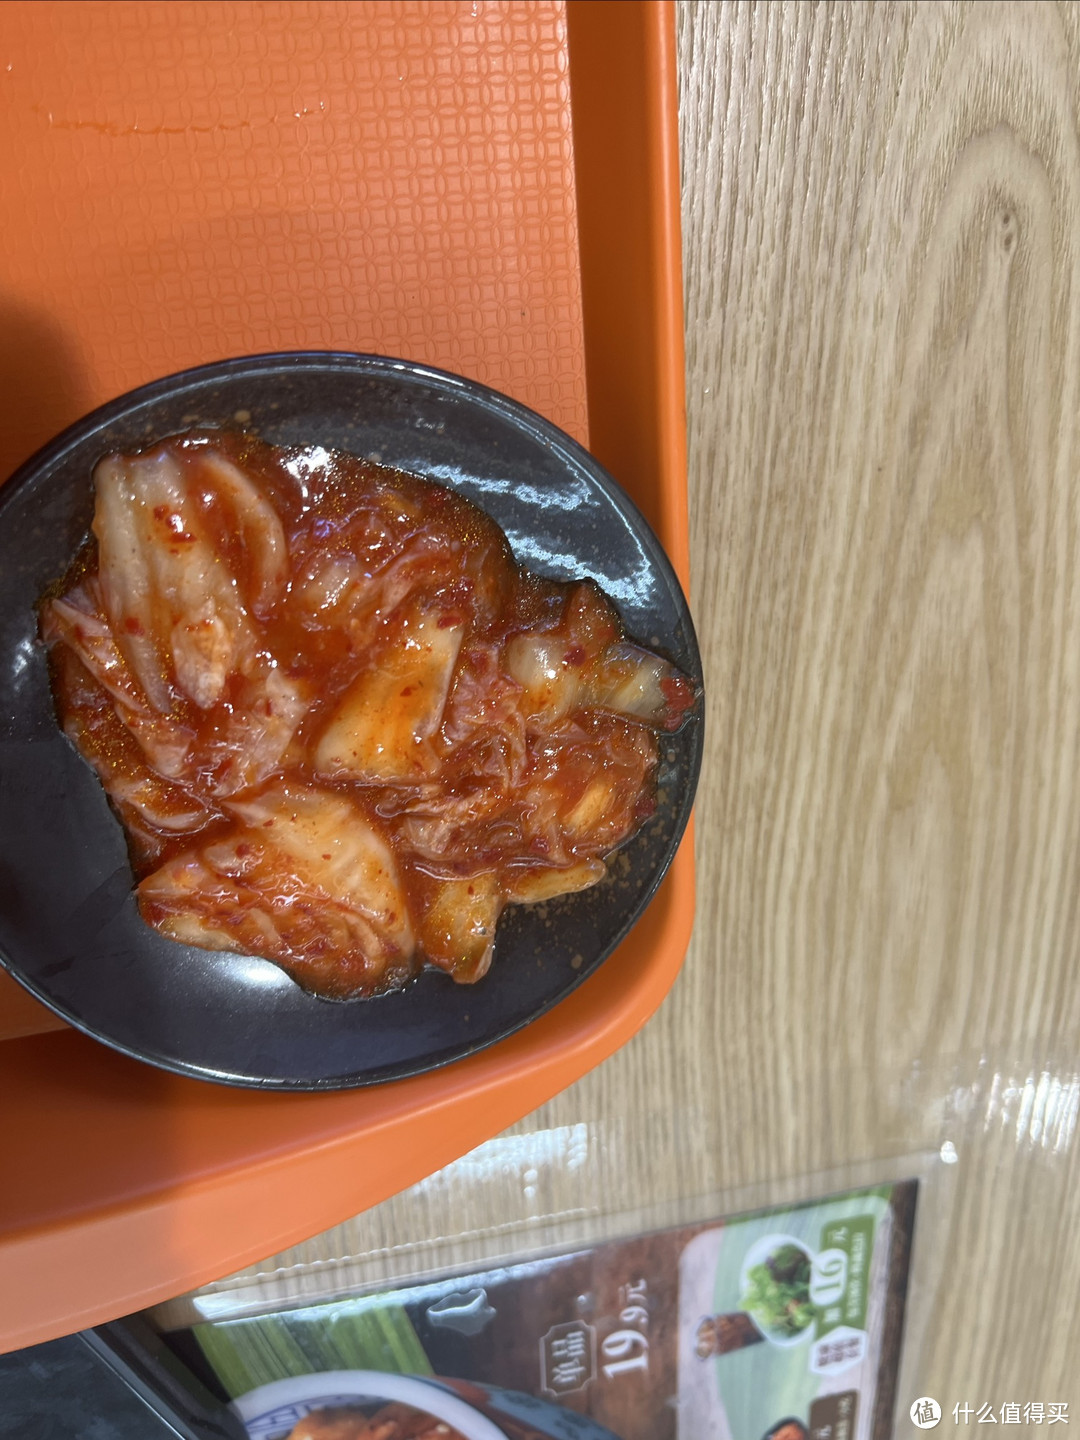 每次吃吉野家 我就会想起《孤独美食家》，这恐怕是国内最便宜的日料了吧？！